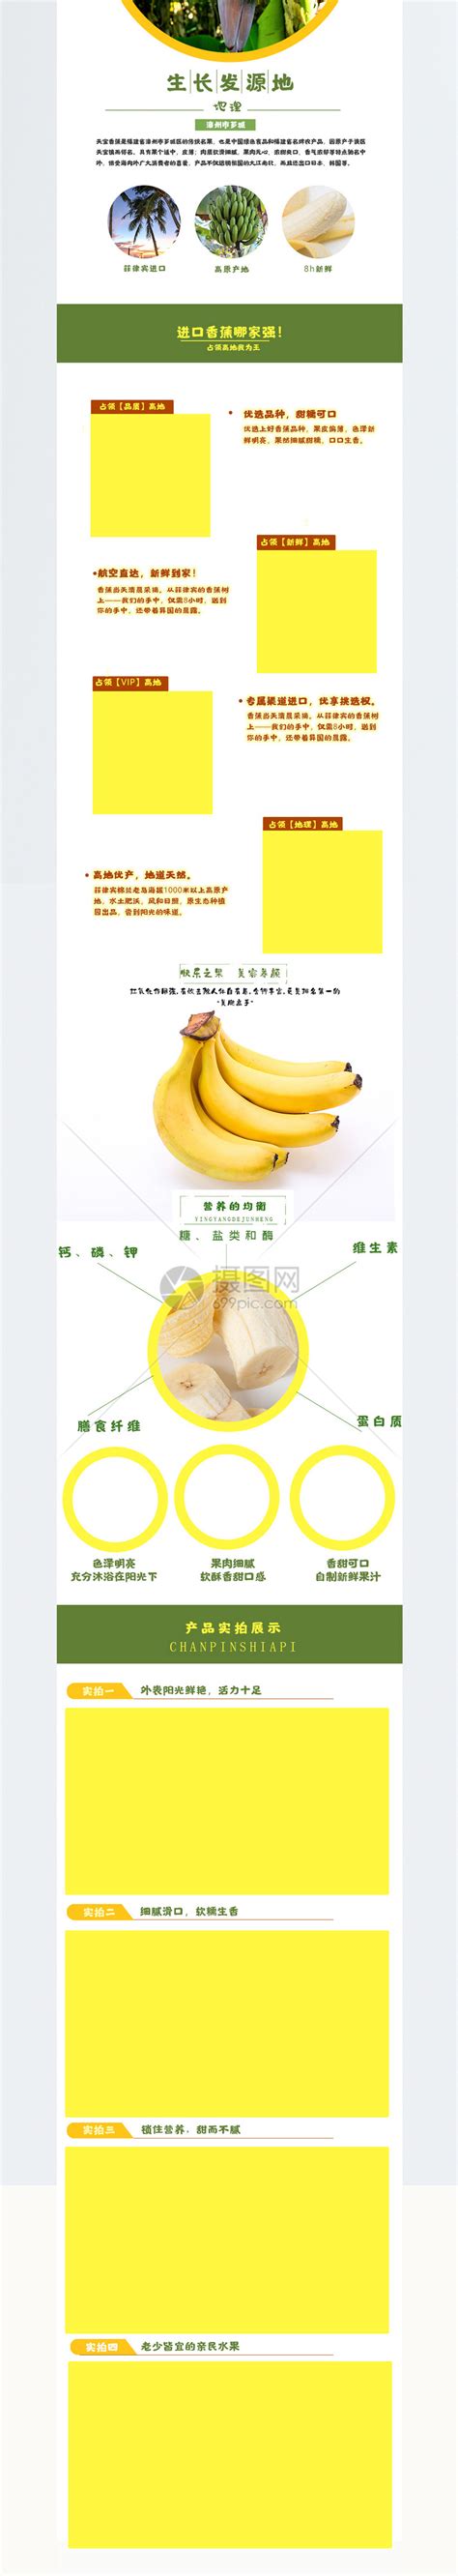 香蕉主题LOGO设计合集欣赏 - 设计揭晓 - 征集码头网